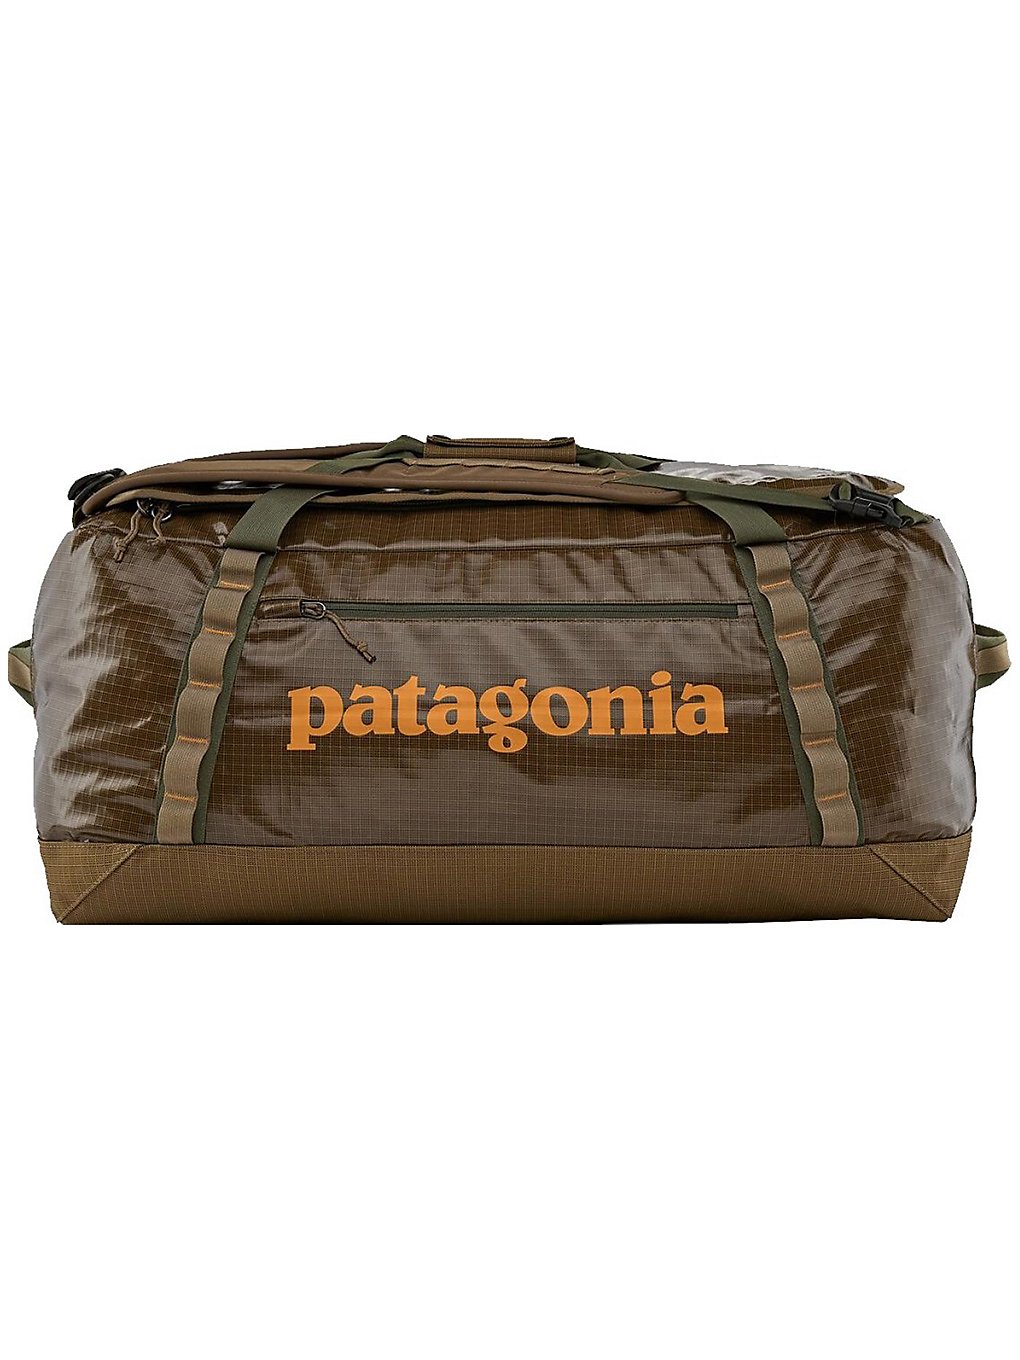 Patagonia Black Hole Duffle 70L Travel Bag marron